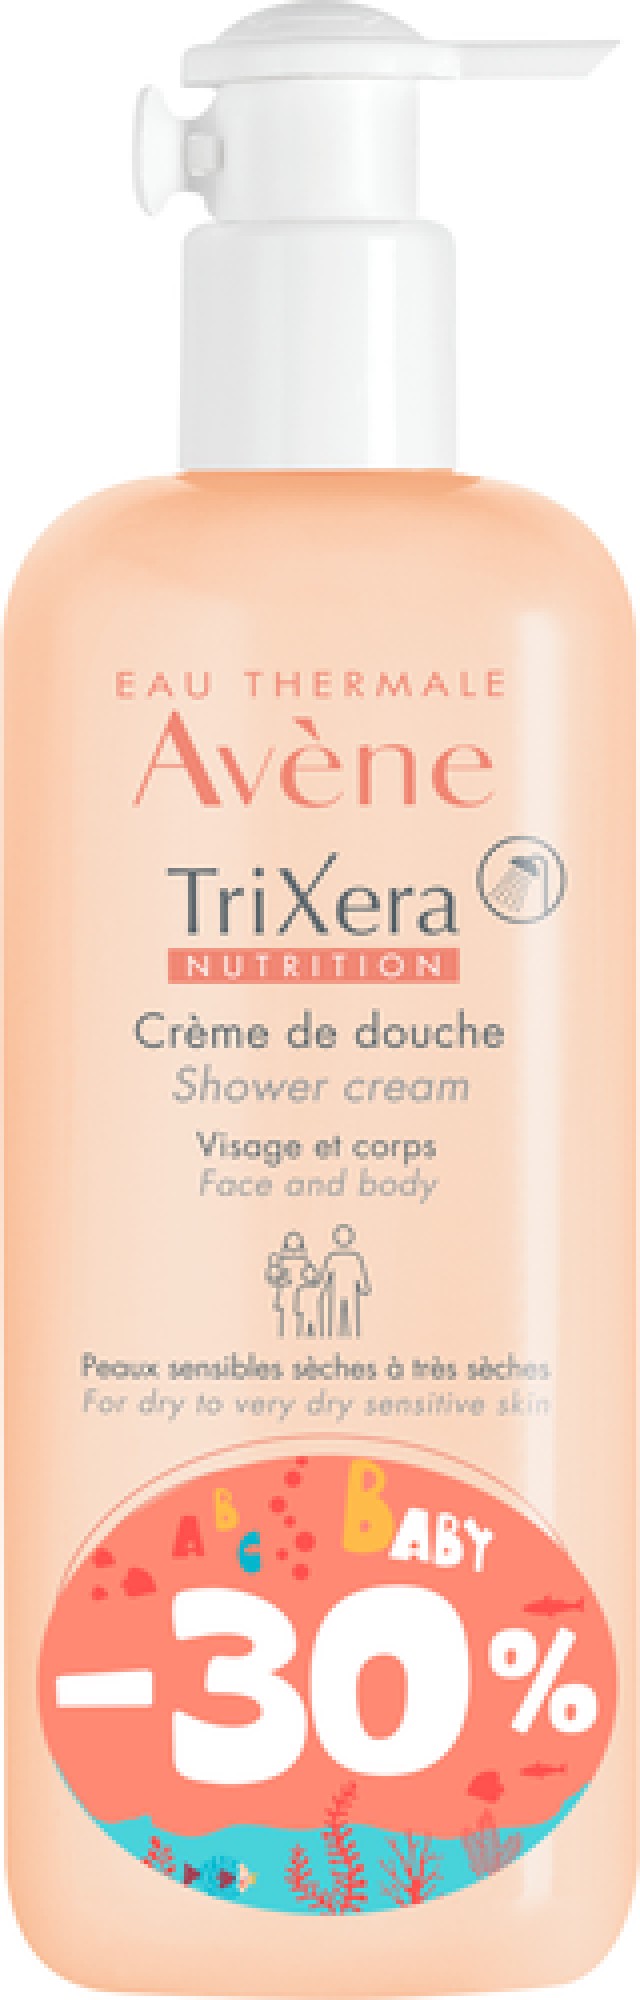 Avene TriXera Nutrition  Κρεμοντούς Για Καθαρισμό & Ενυδάτωση 500ml -30%